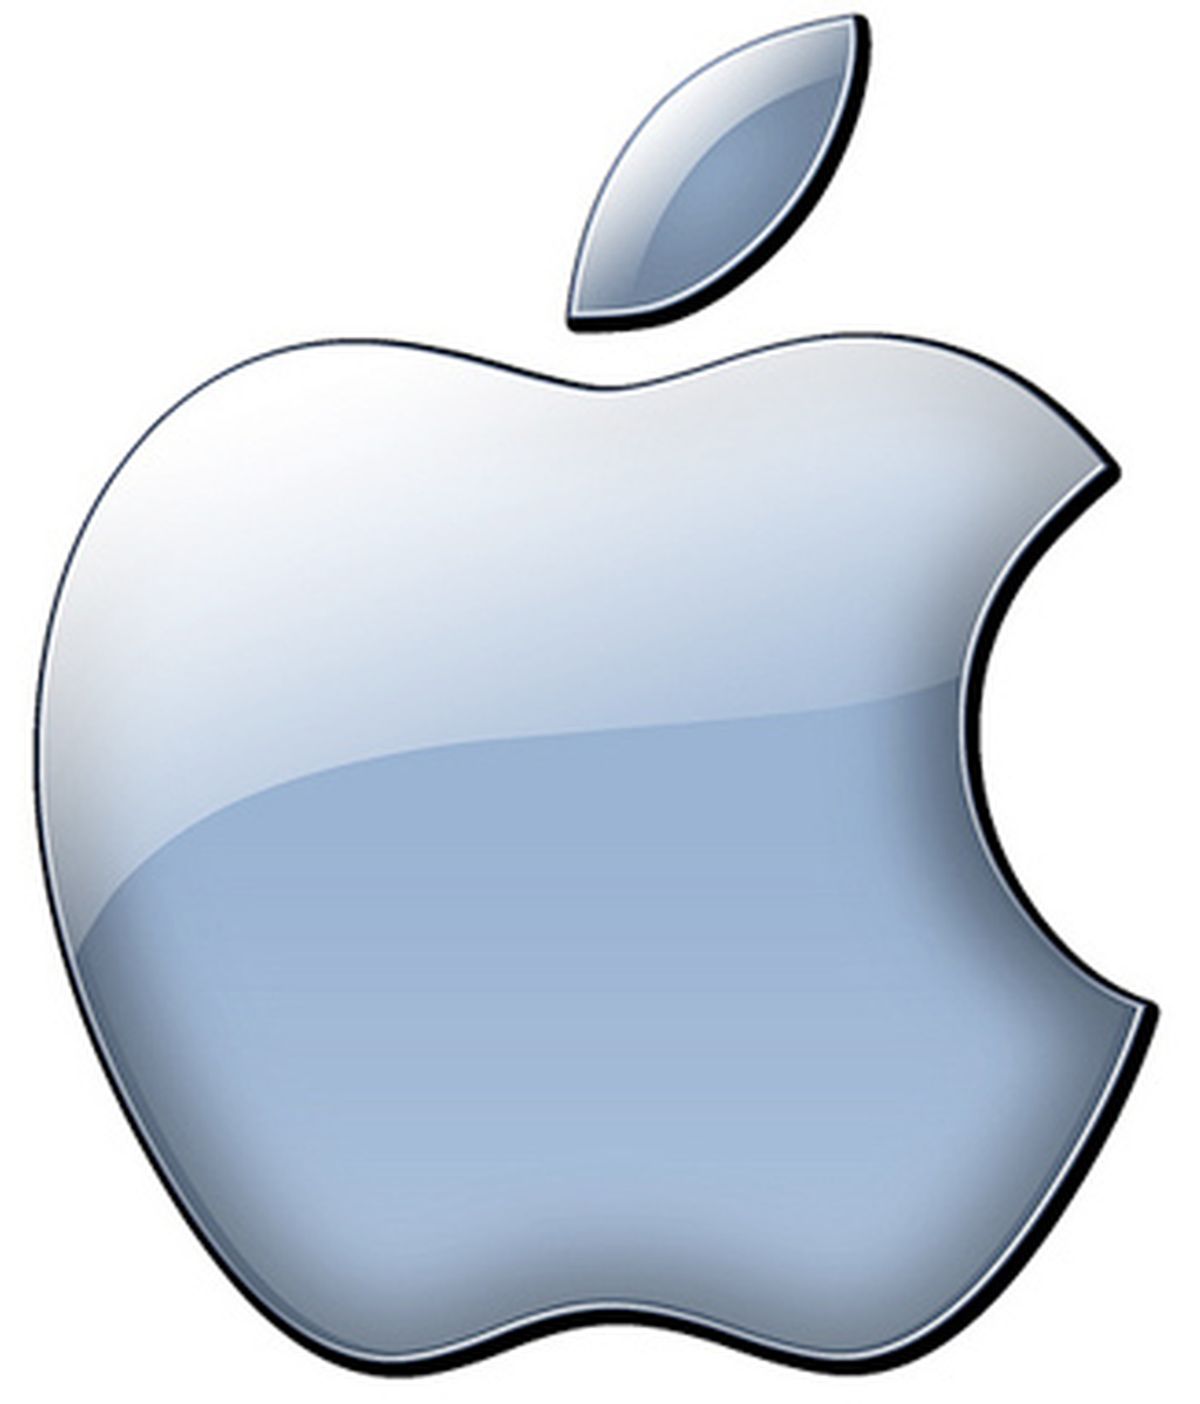 La compañía de la manzana incrementó su valor un 19 % el pasado año hasta alcanzar un valor de 183 mil millones de dólares.